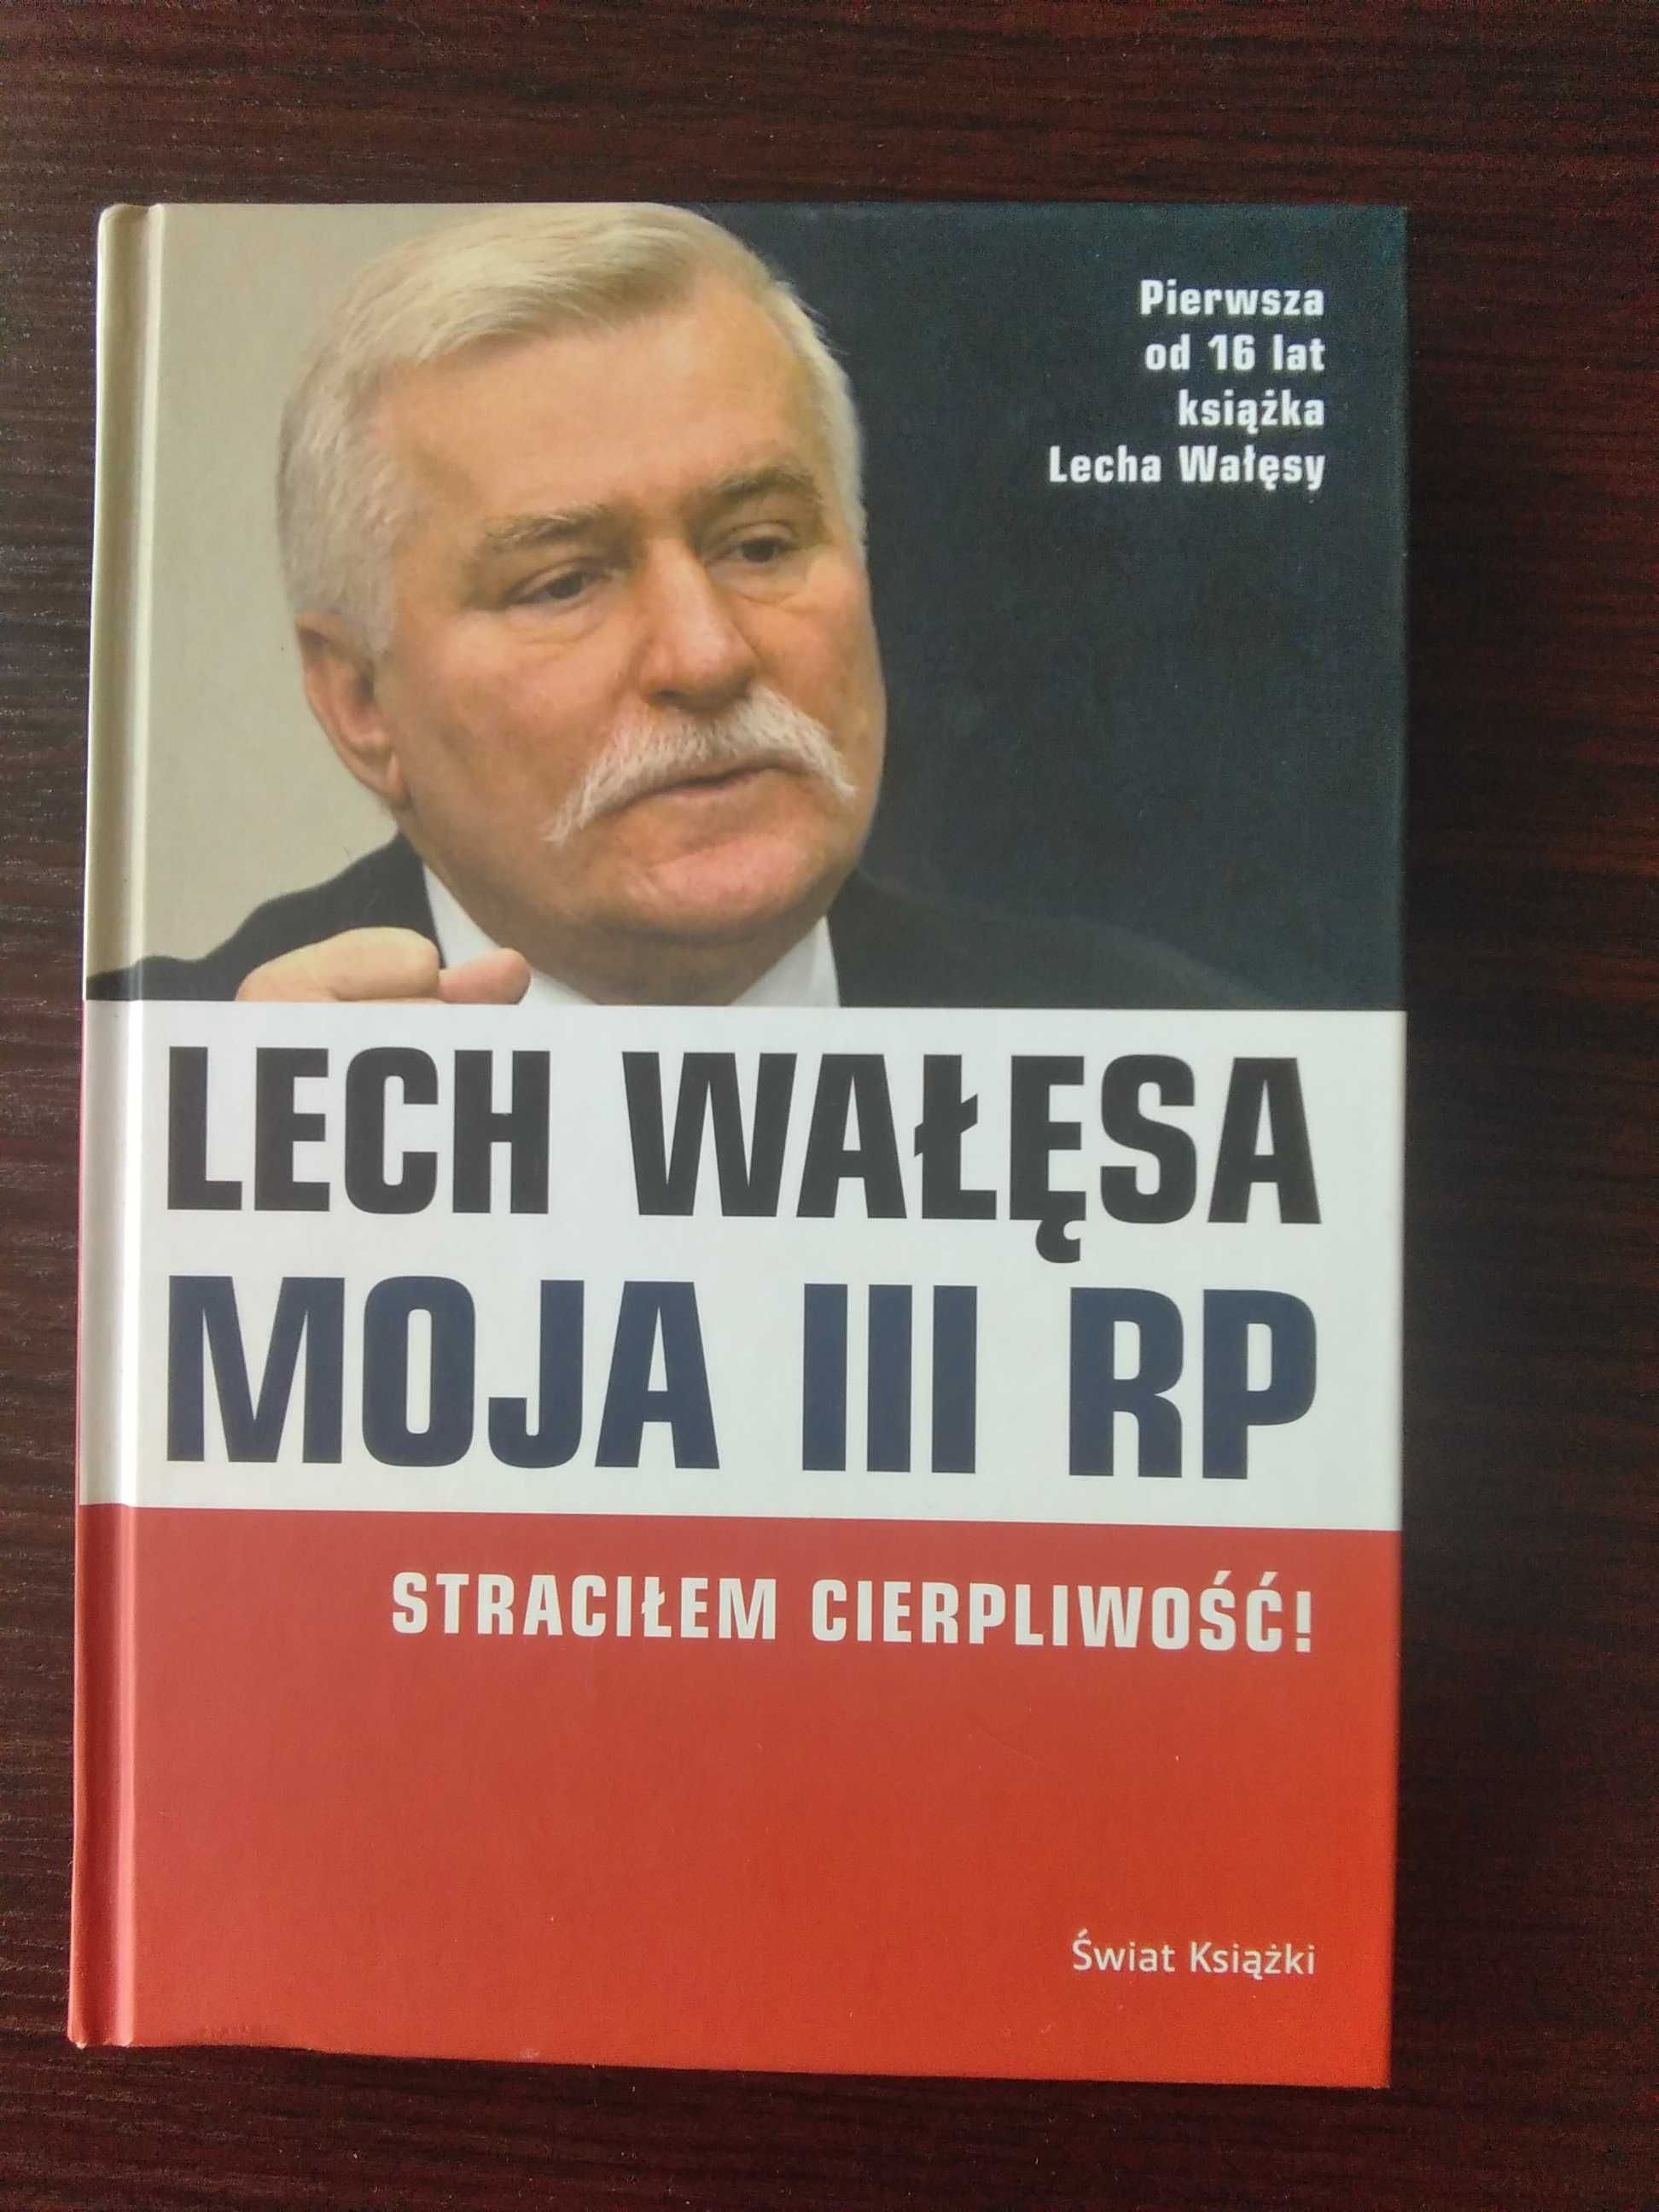 Moja III RP Lech Wałęsa